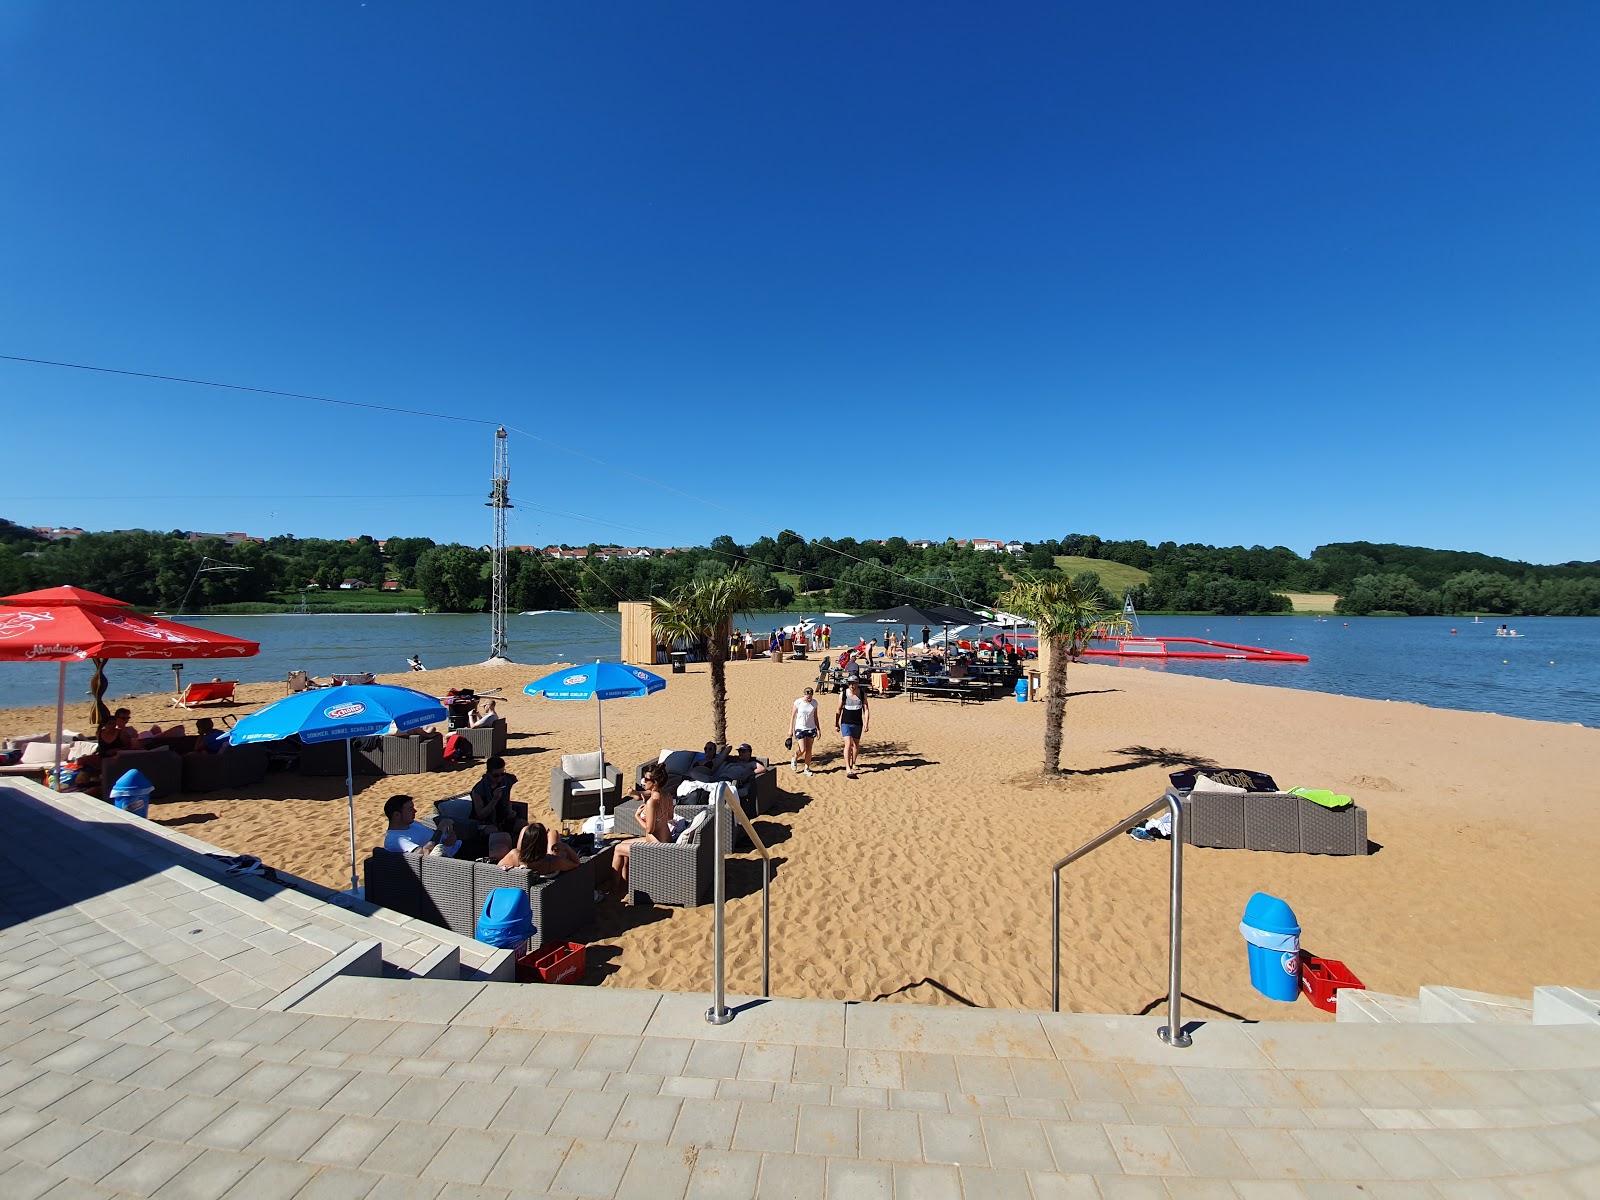 Foto af Spielplatz Wakepark Brombachsee med rummelig kyst